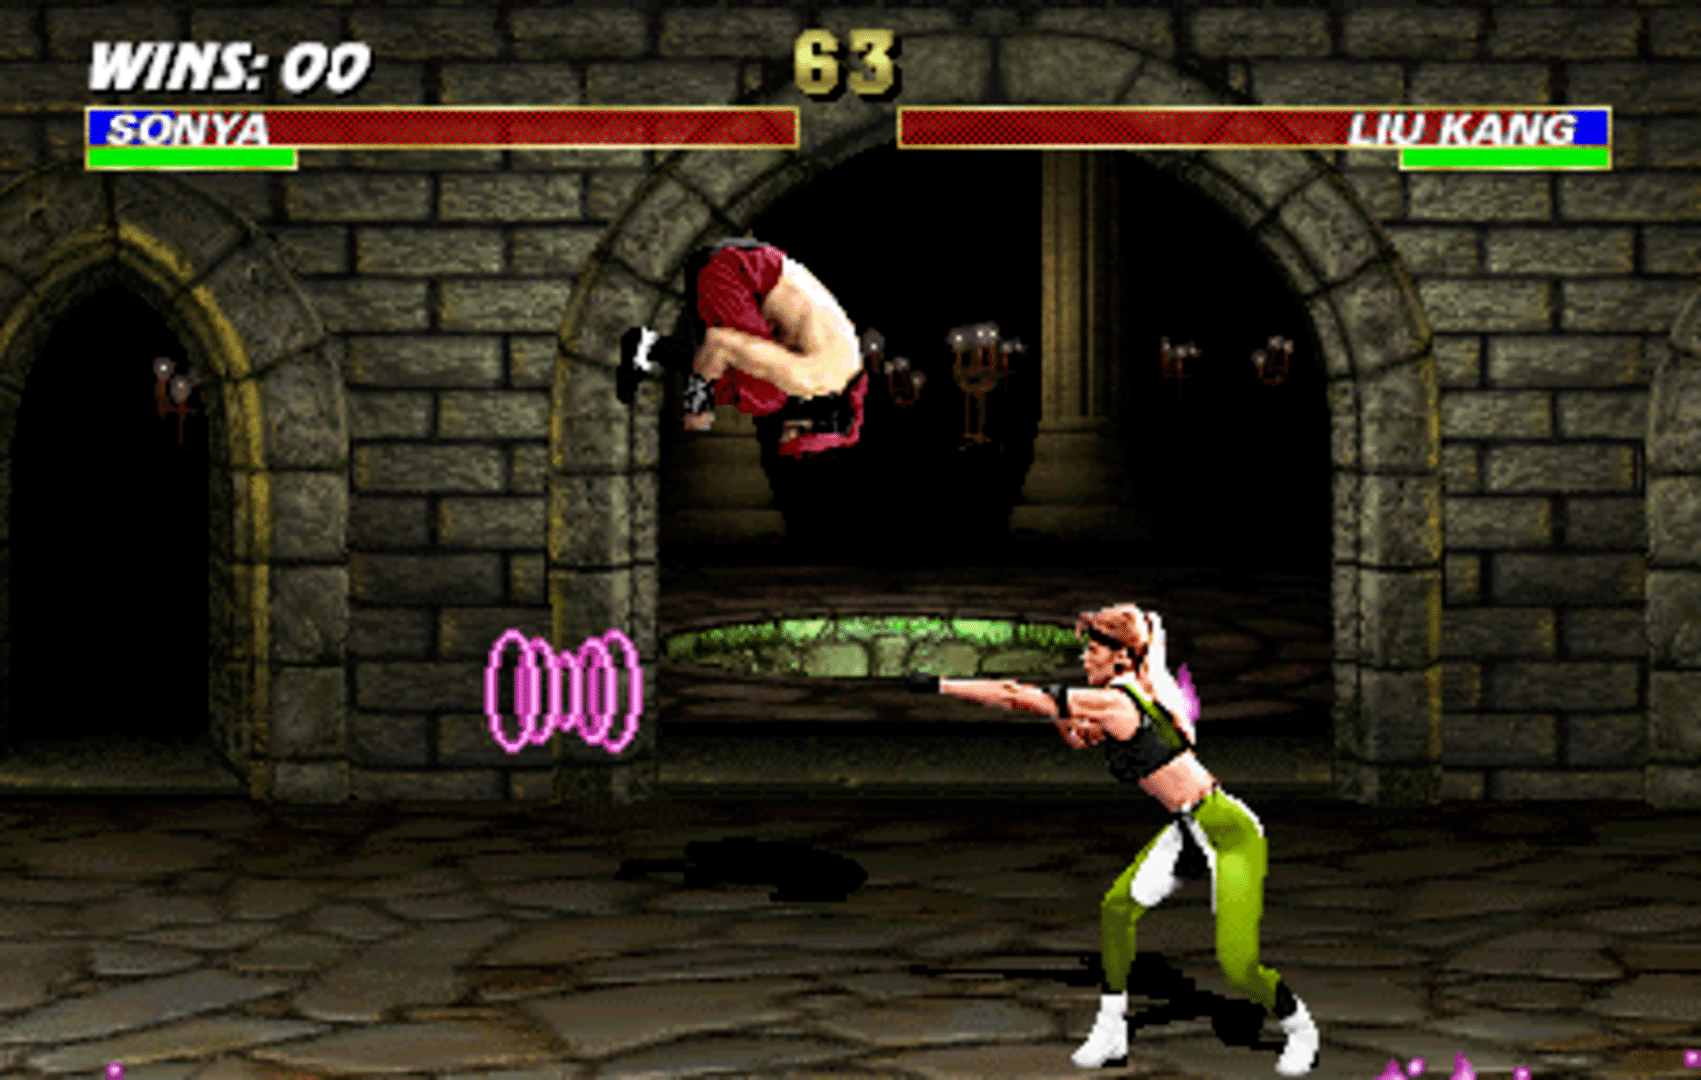 Mortal Kombat 3 screenshot